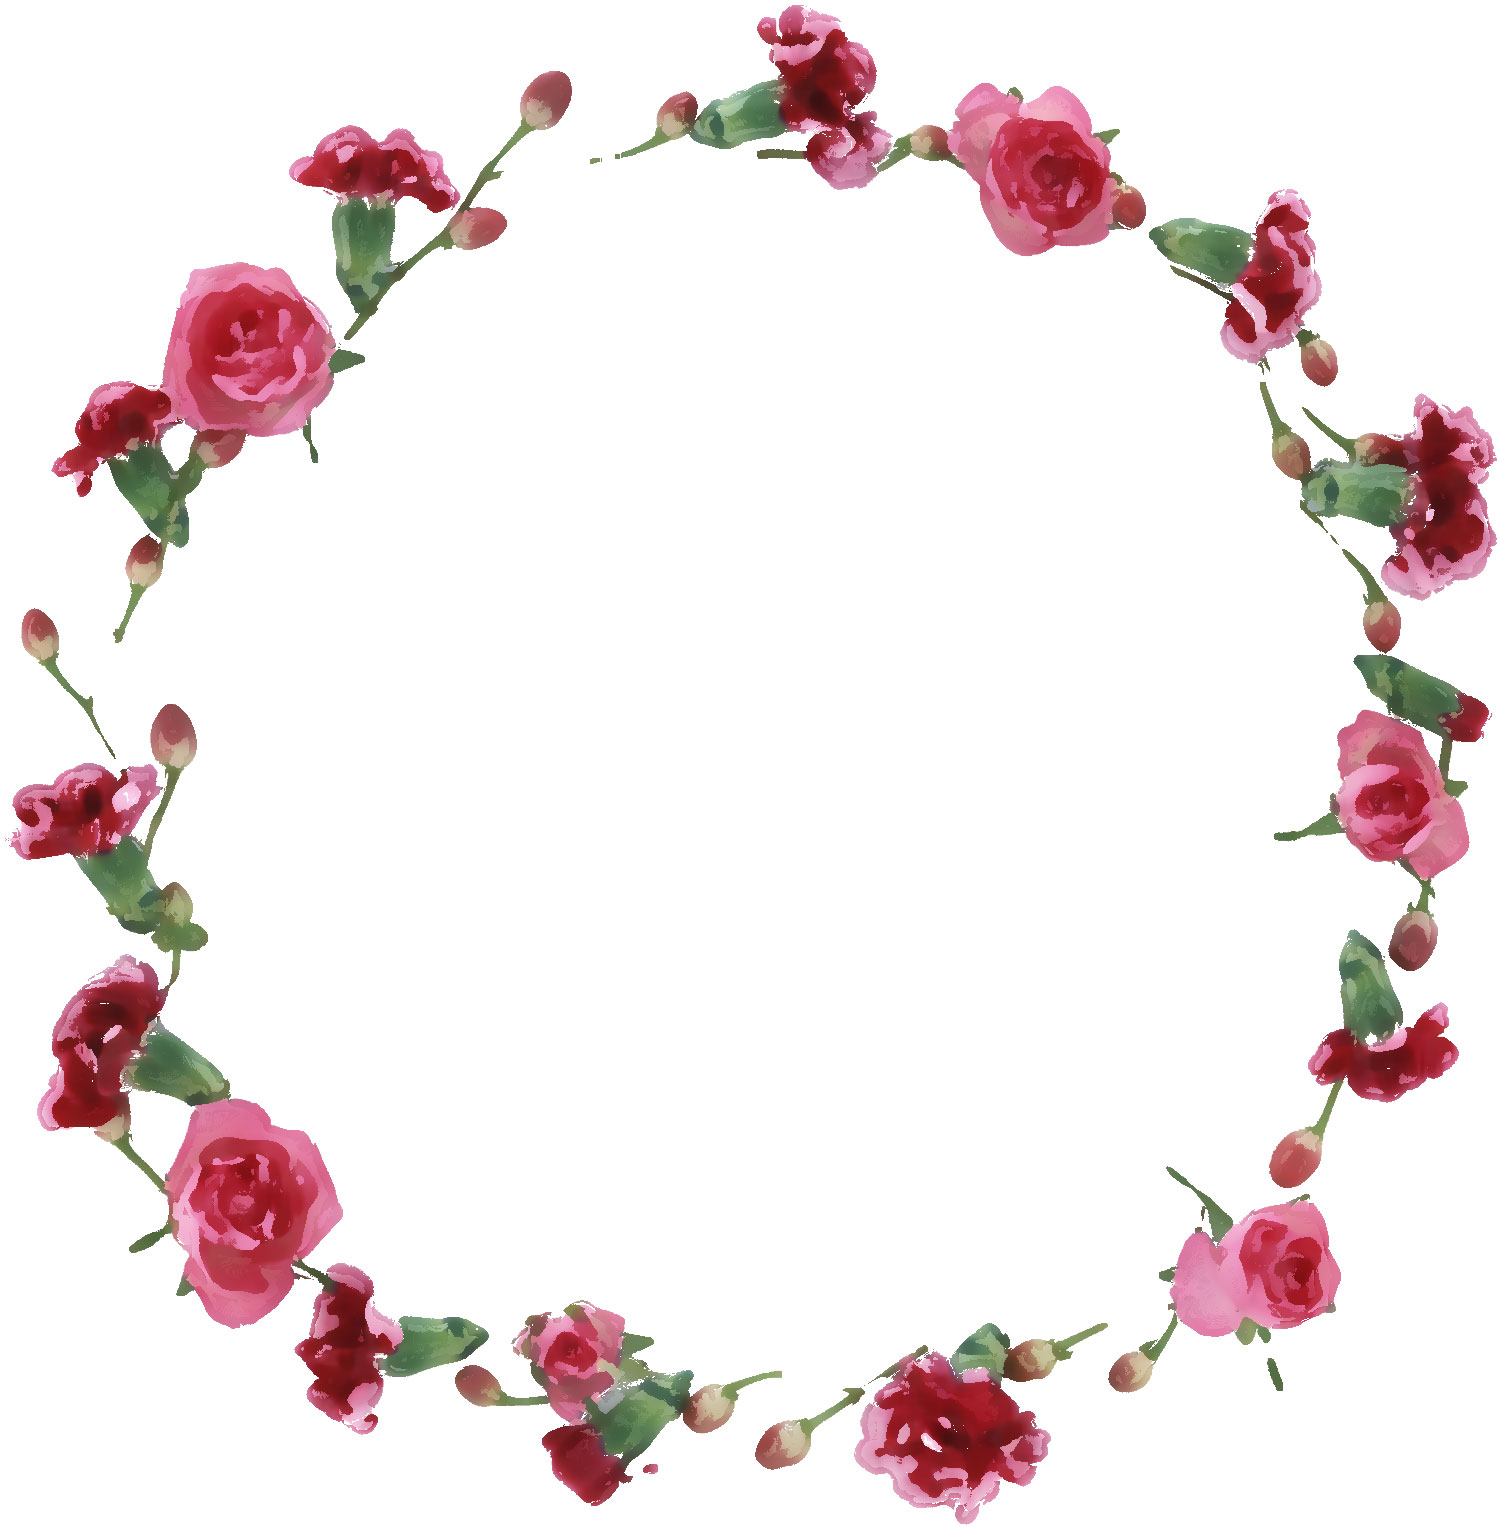 赤い花のイラスト フリー素材 No 573 ピンクのバラ つぼみ